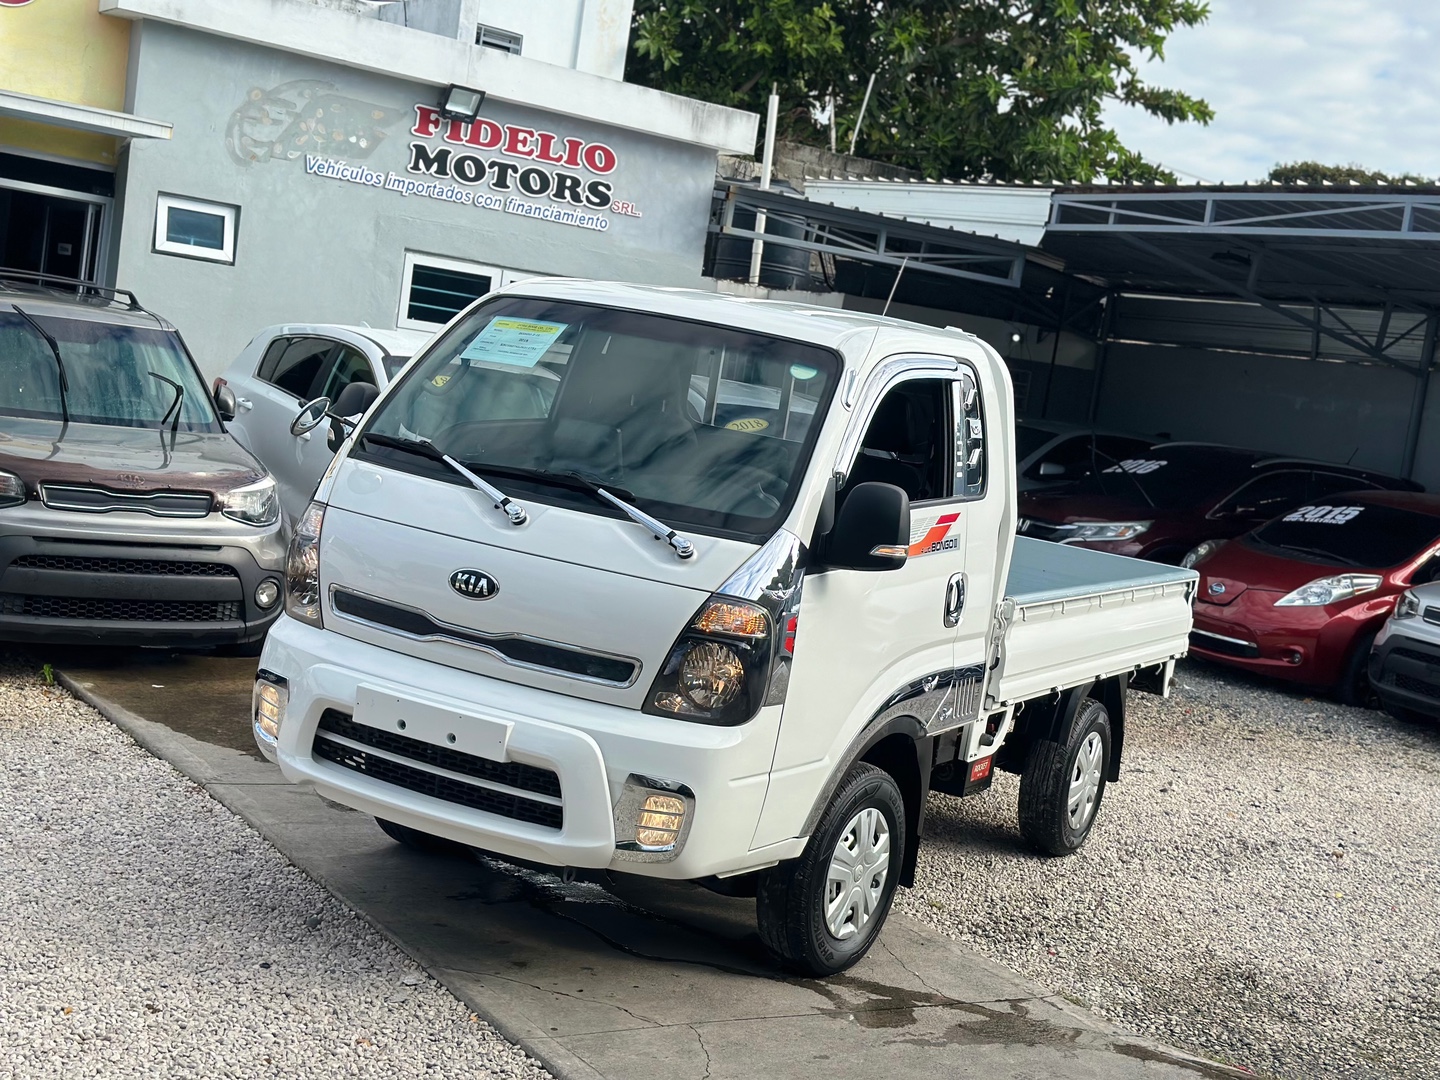 camiones y vehiculos pesados - 2018 Kia Bongo III 4x4 OFERTA